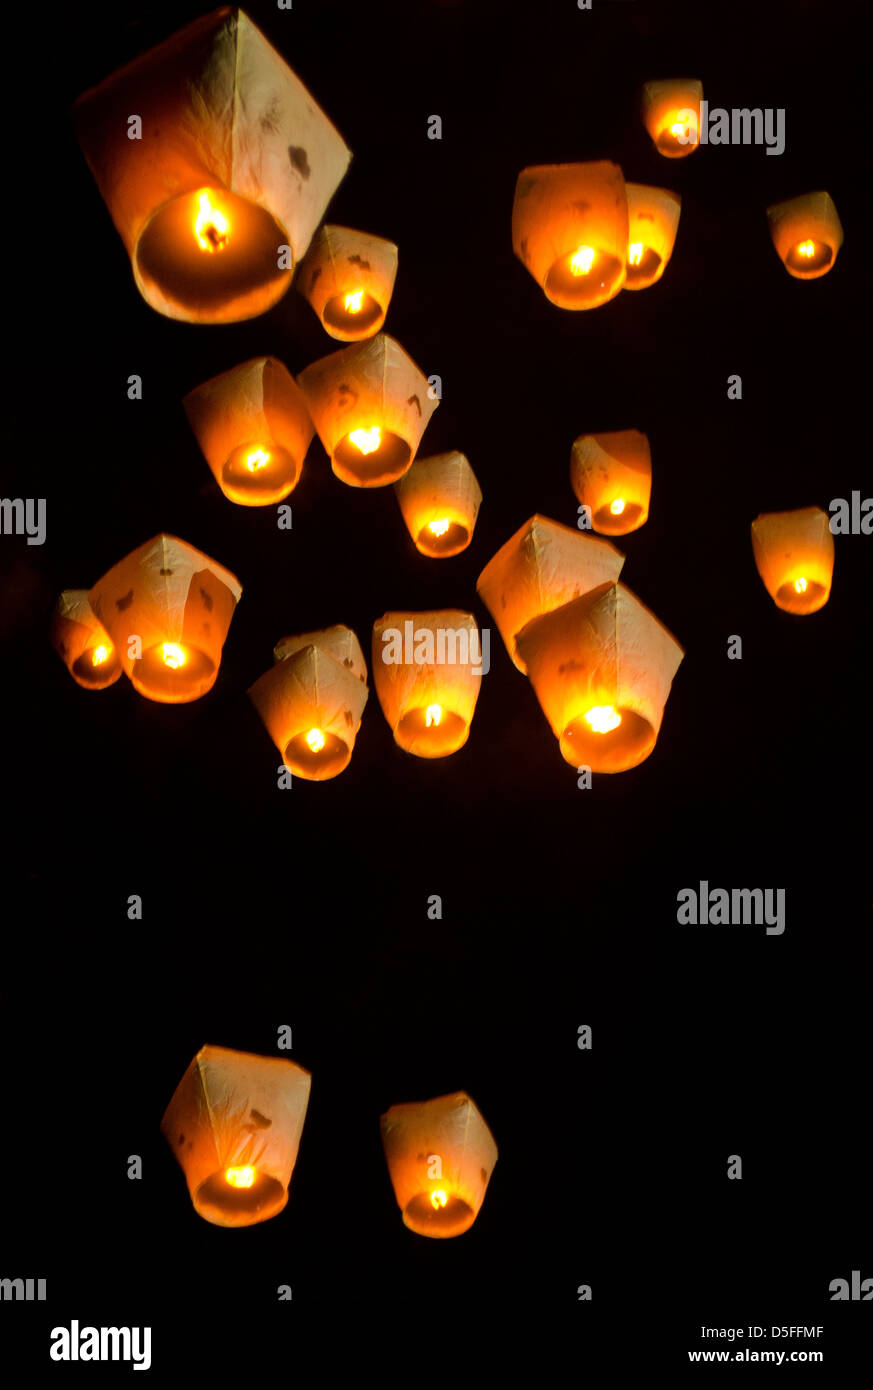 Lanternes célestes Banque de photographies et d'images à haute résolution -  Alamy